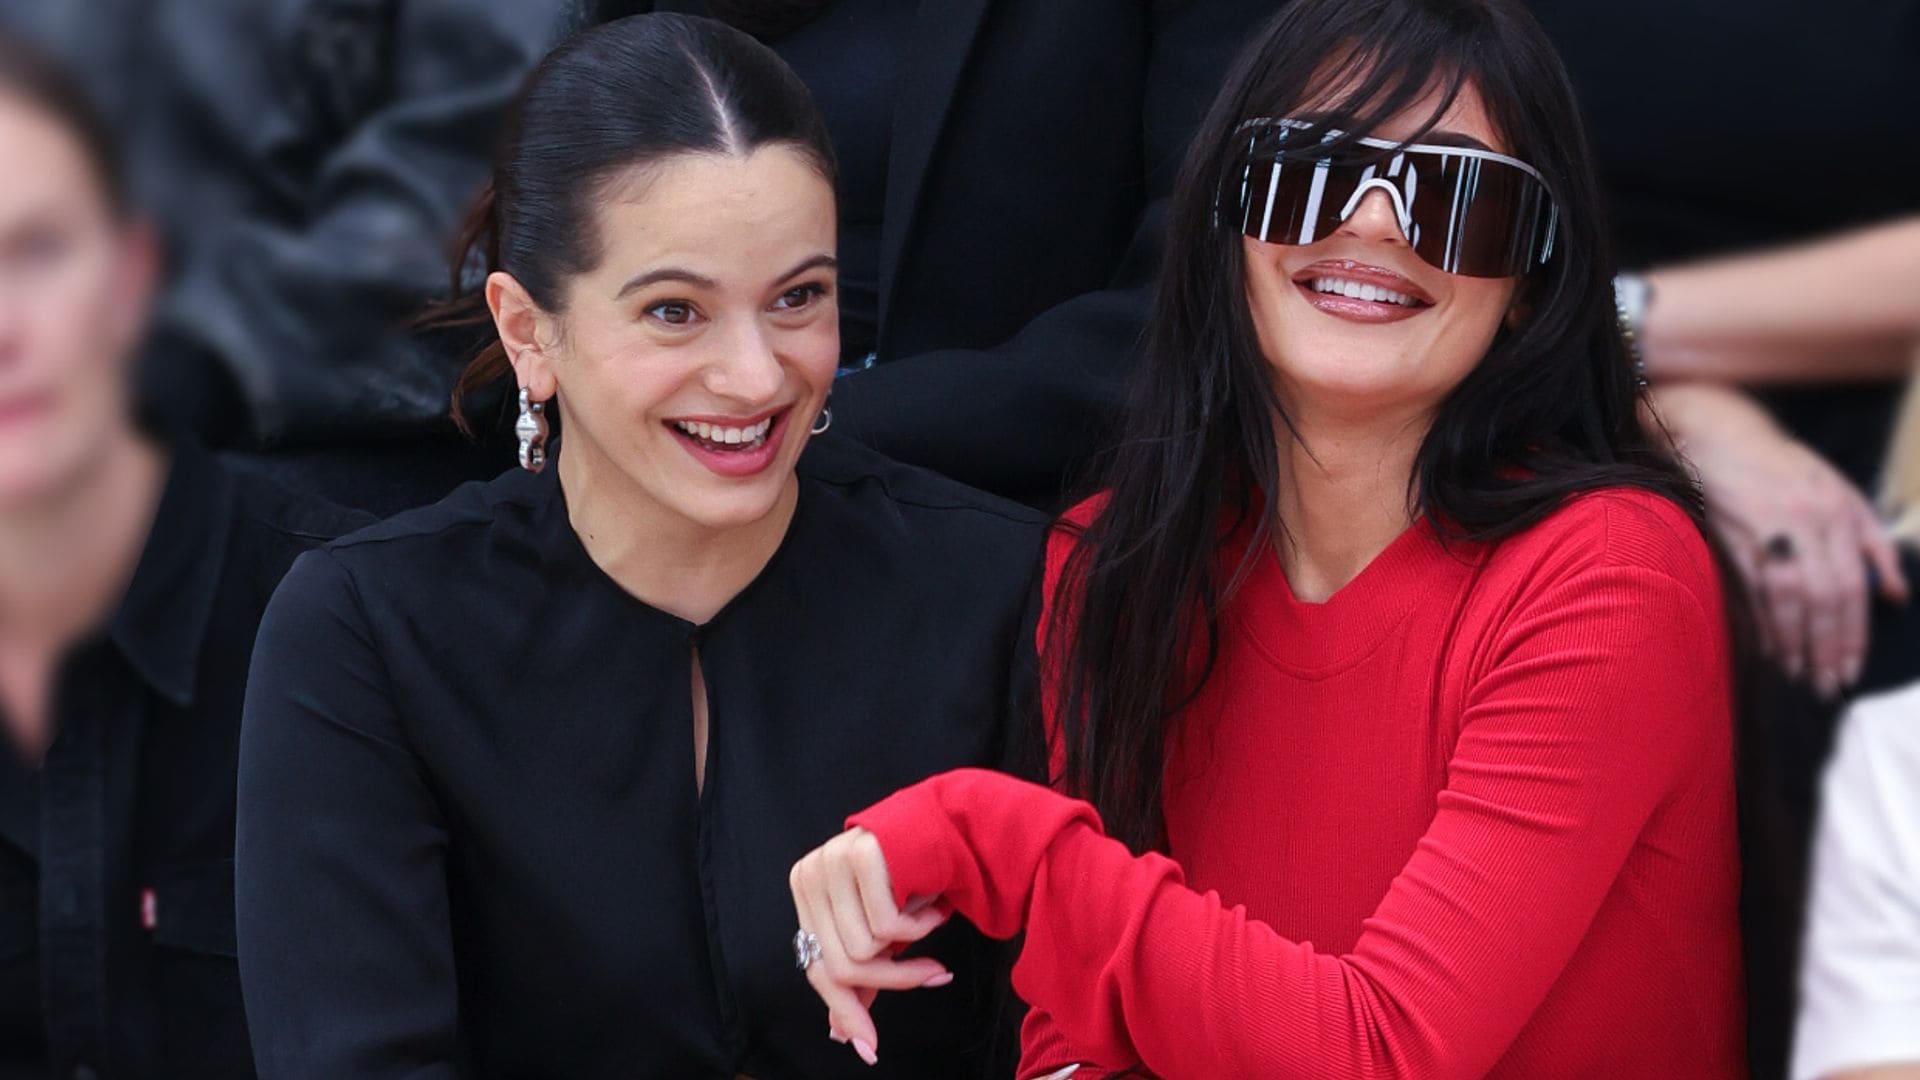 Rosalía y Kylie Jenner, protagonistas de las imágenes más divertidas y cómplices en el desfile de Acne Studios